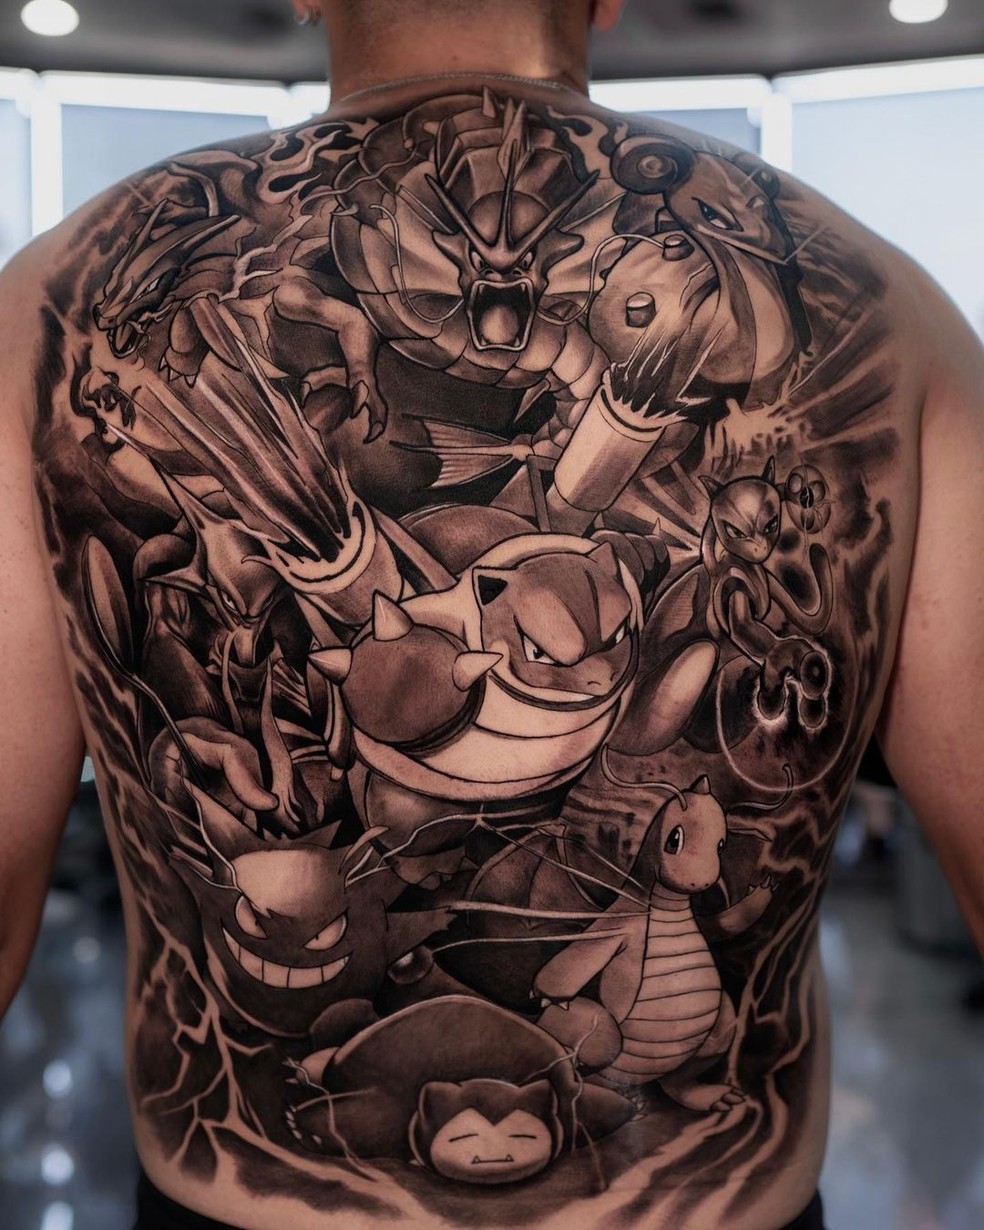 Os detalhes da tatuagem de Nick Kyrgios — Foto: Reprodução/Instagram